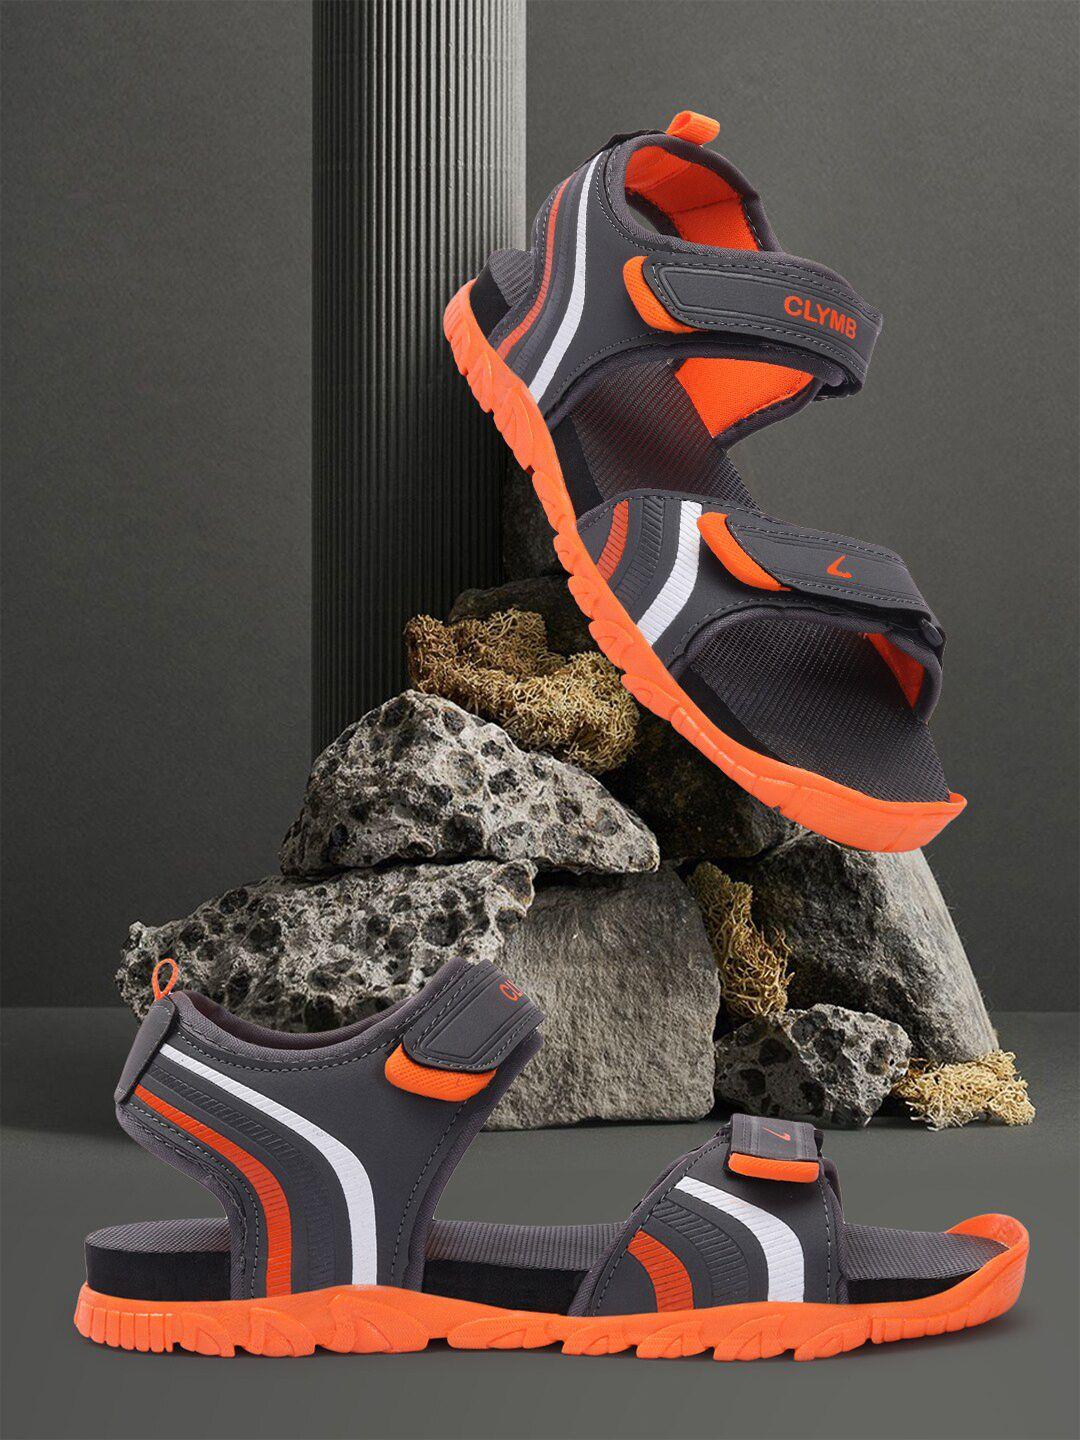 clymb-men-comfort-sports-sandals